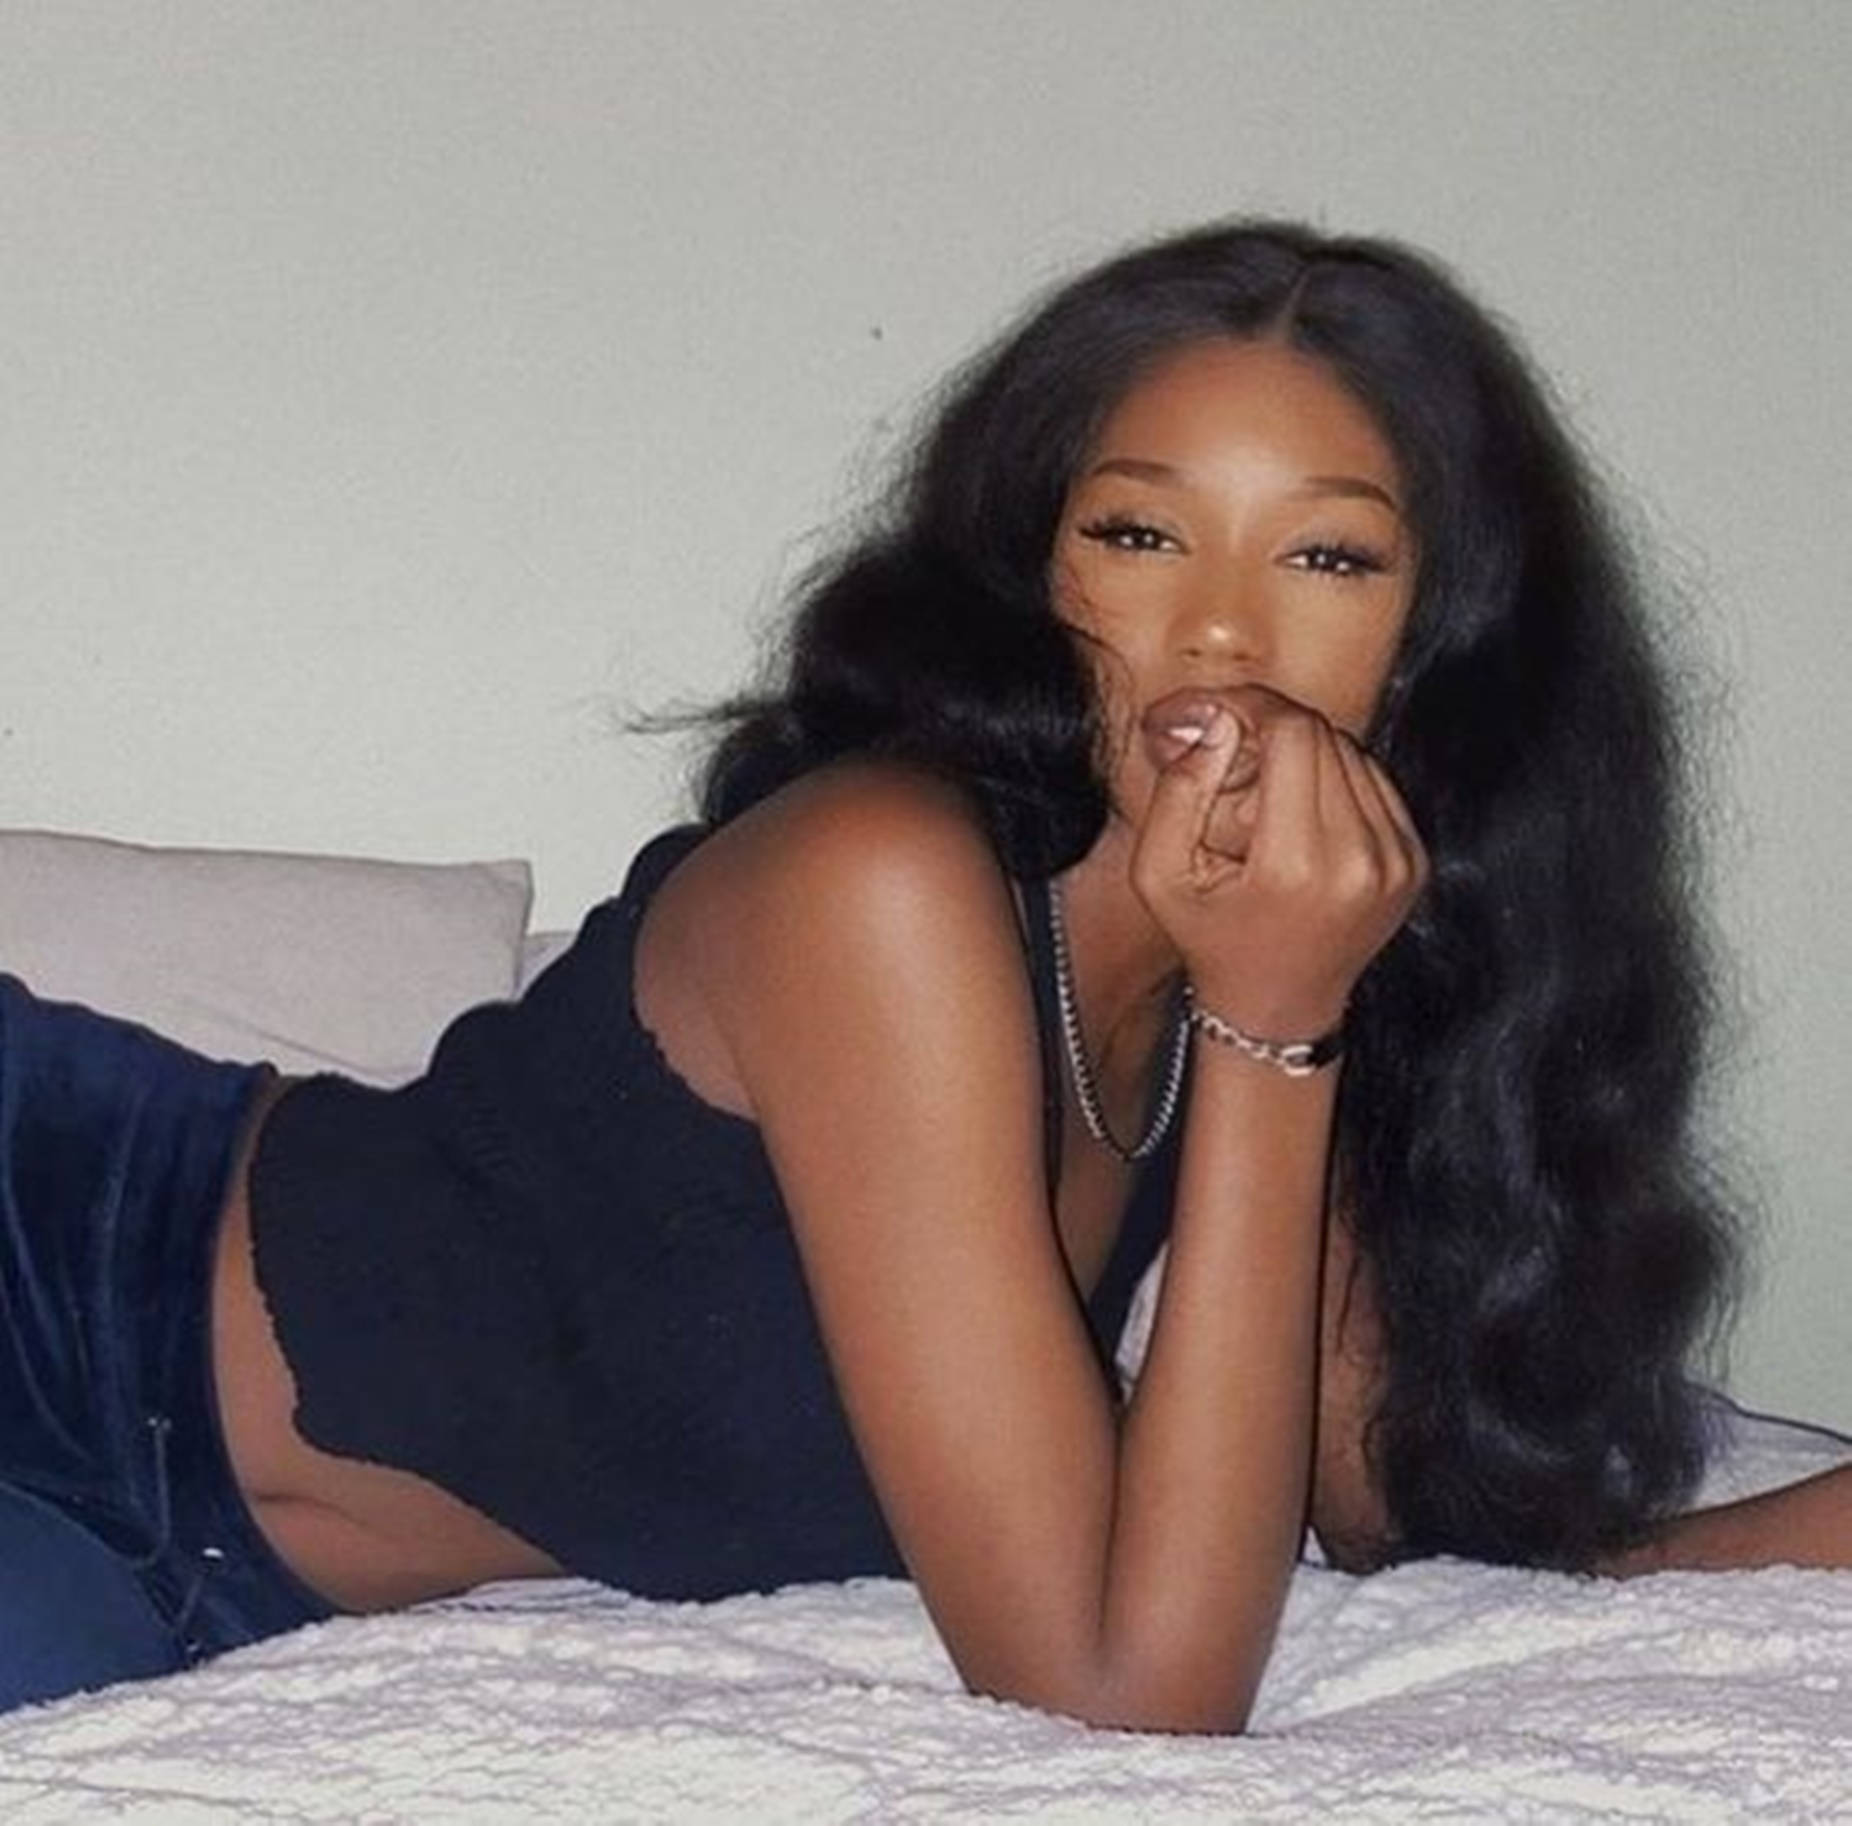 Sultry smuk sort kvinde på sengen Wallpaper